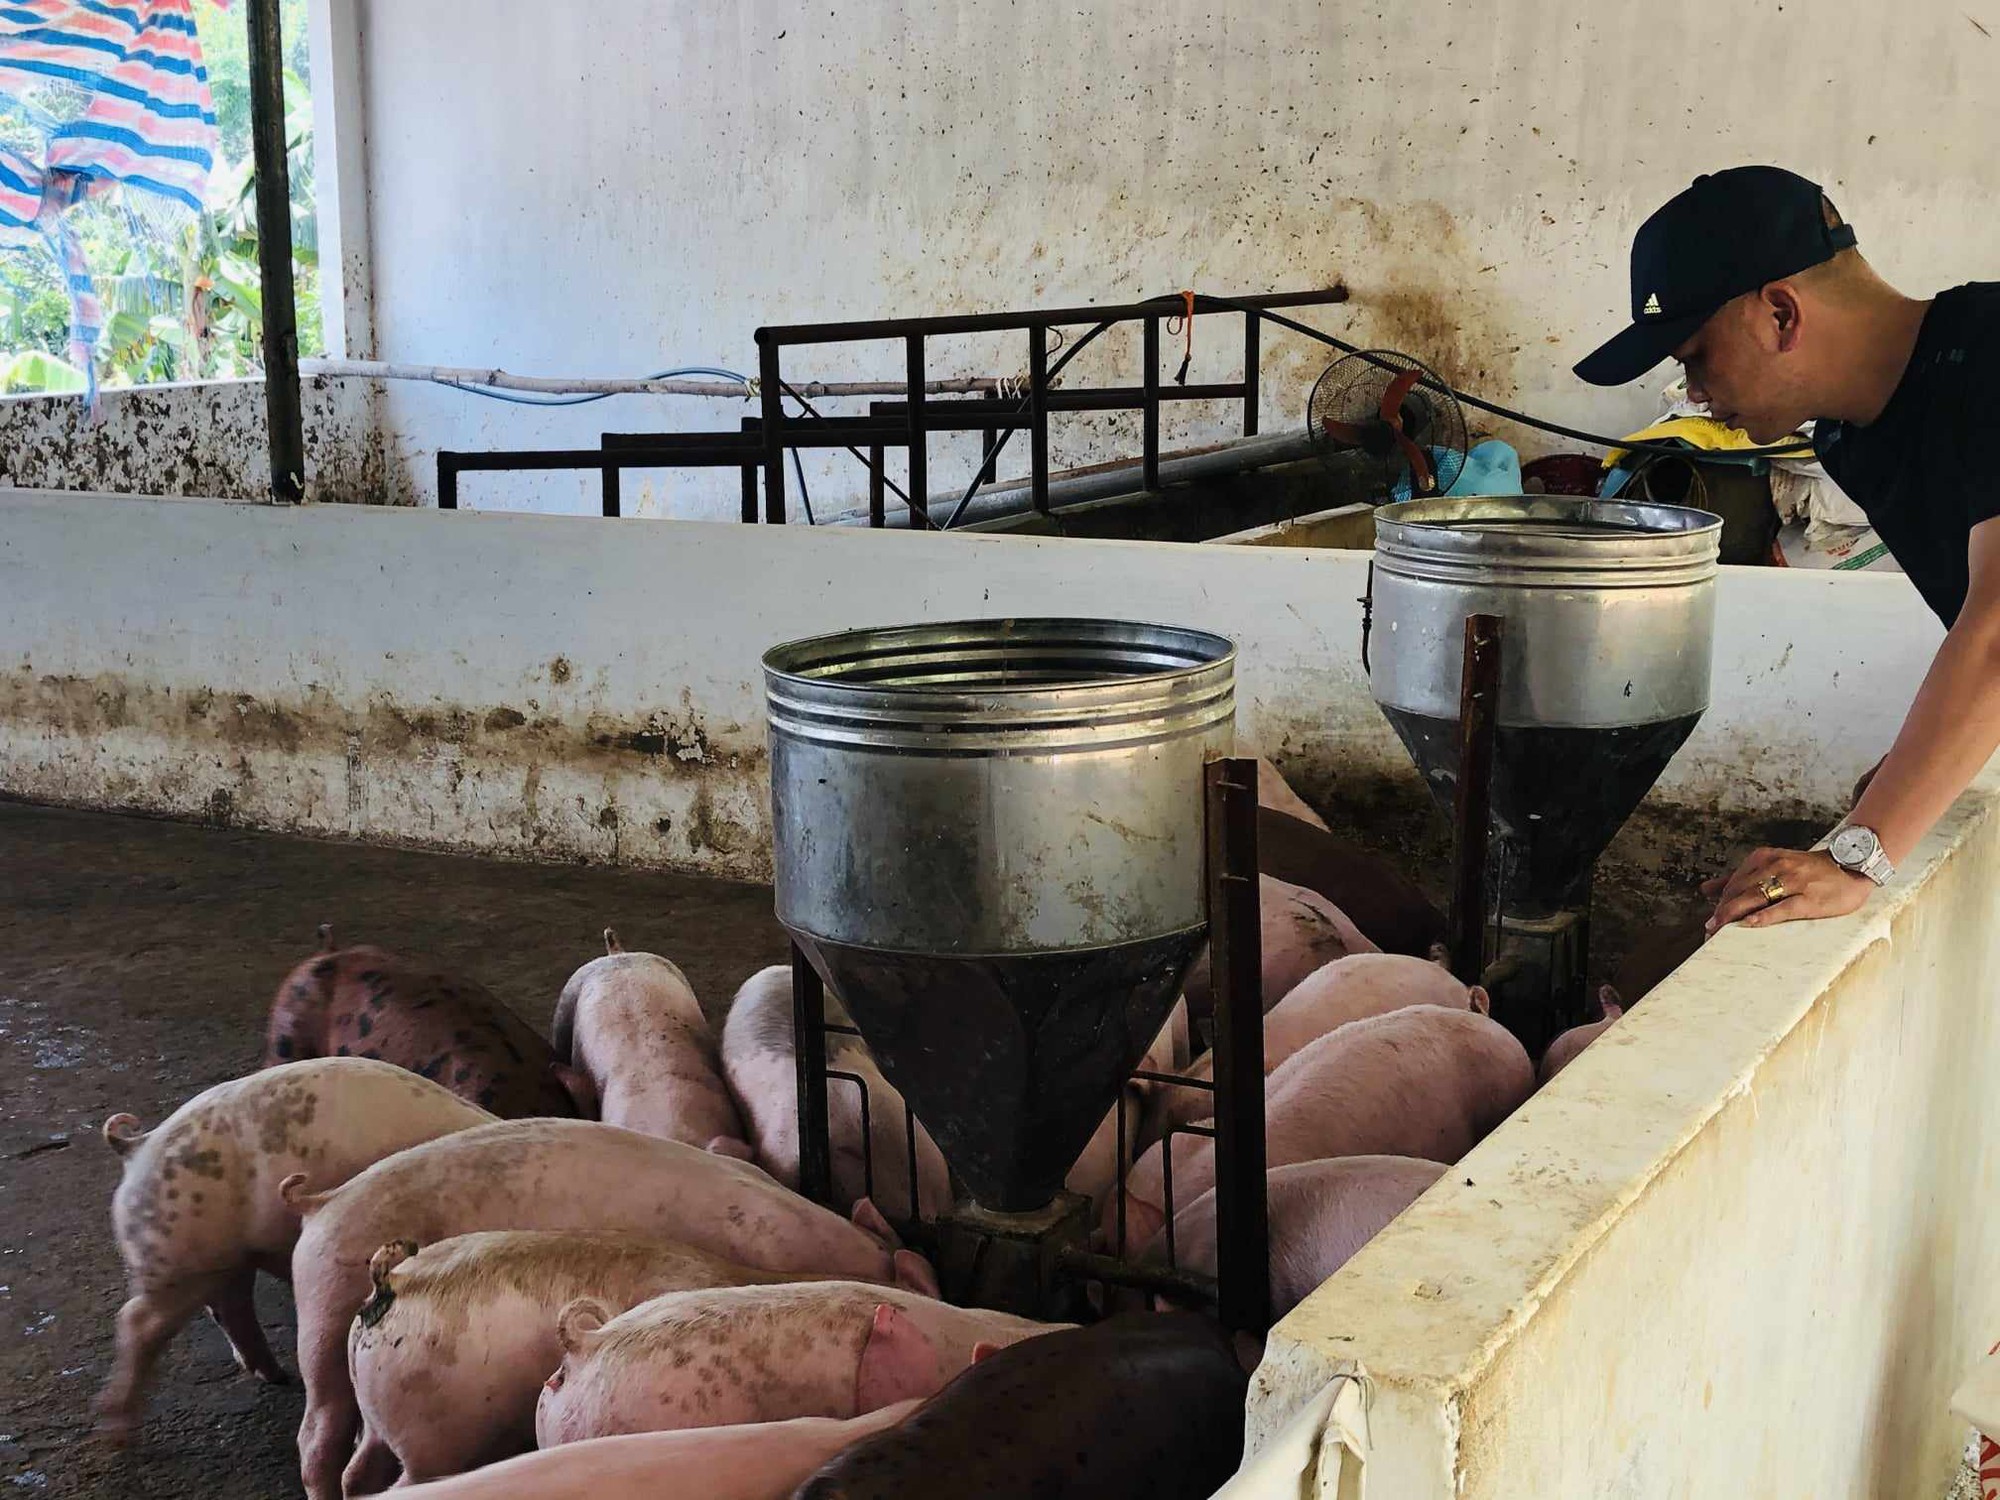 Cục Chăn nuôi: Tết năm nay không lo thiếu thịt, lo nhất sức mua và khi nào giá lợn hơi nhích lên - Ảnh 1.